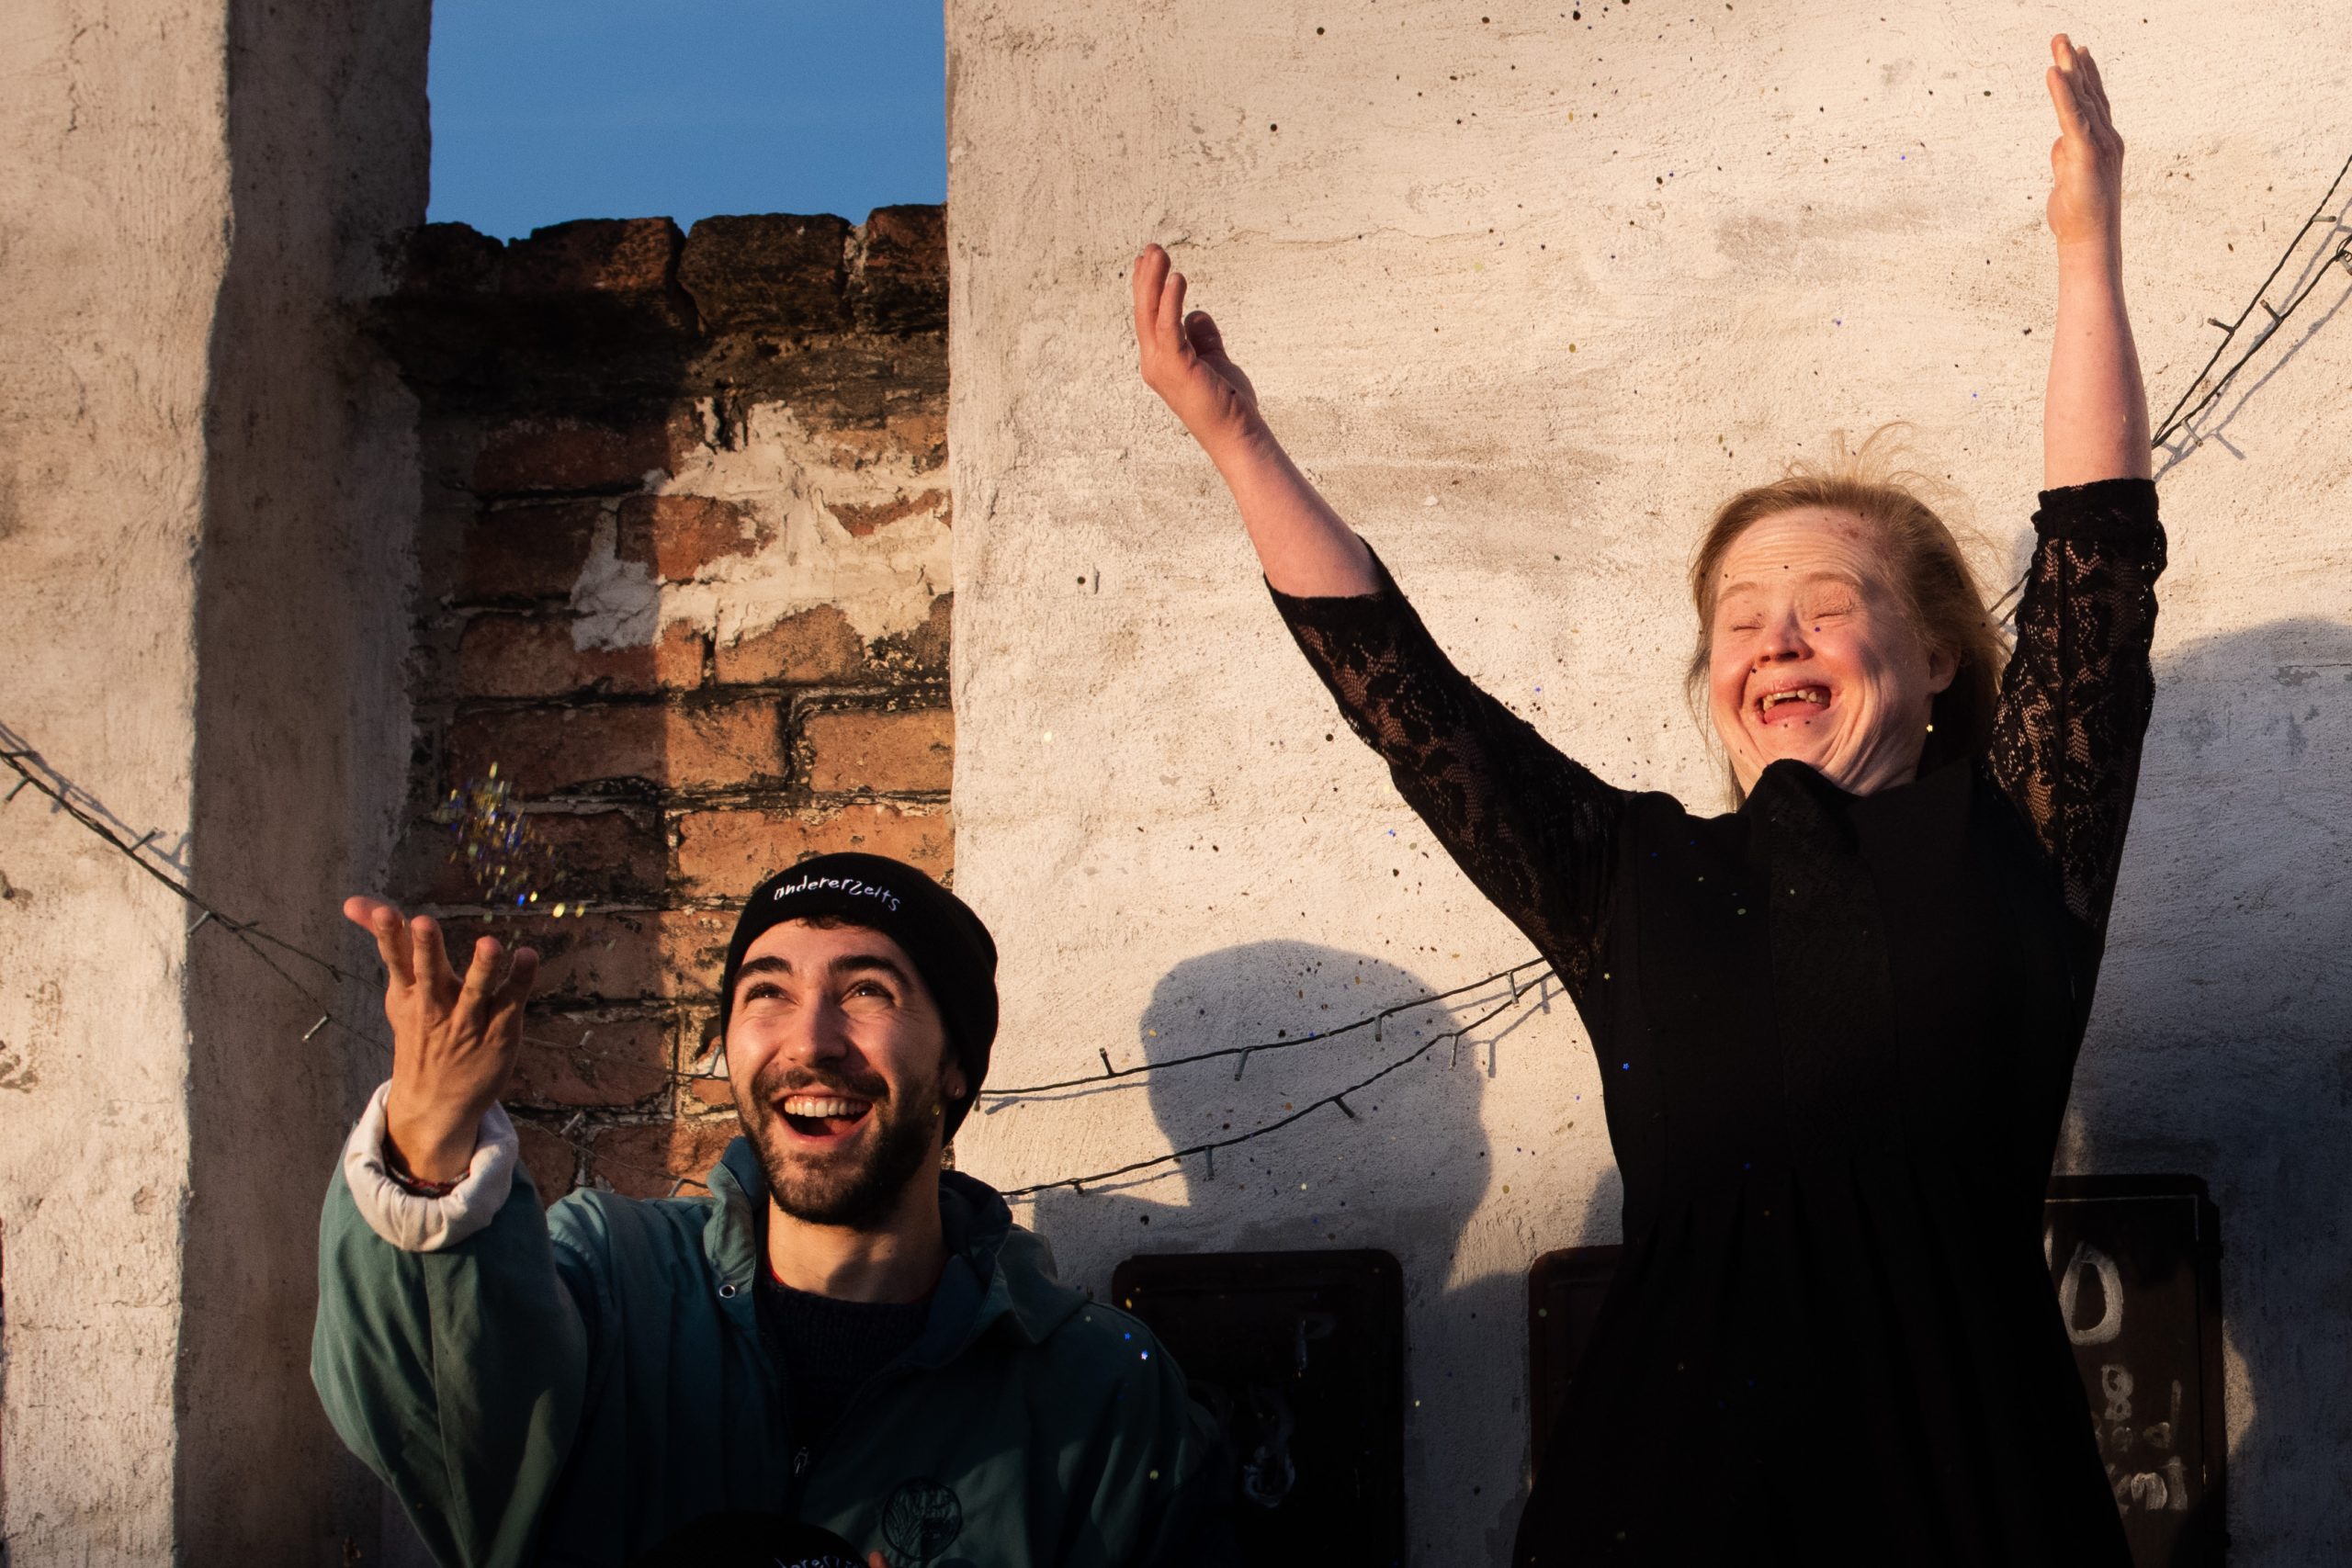 Unterstützer Moritz und Redakteurin Hanna tragen Hauben und werfen Glitzer in die Luft